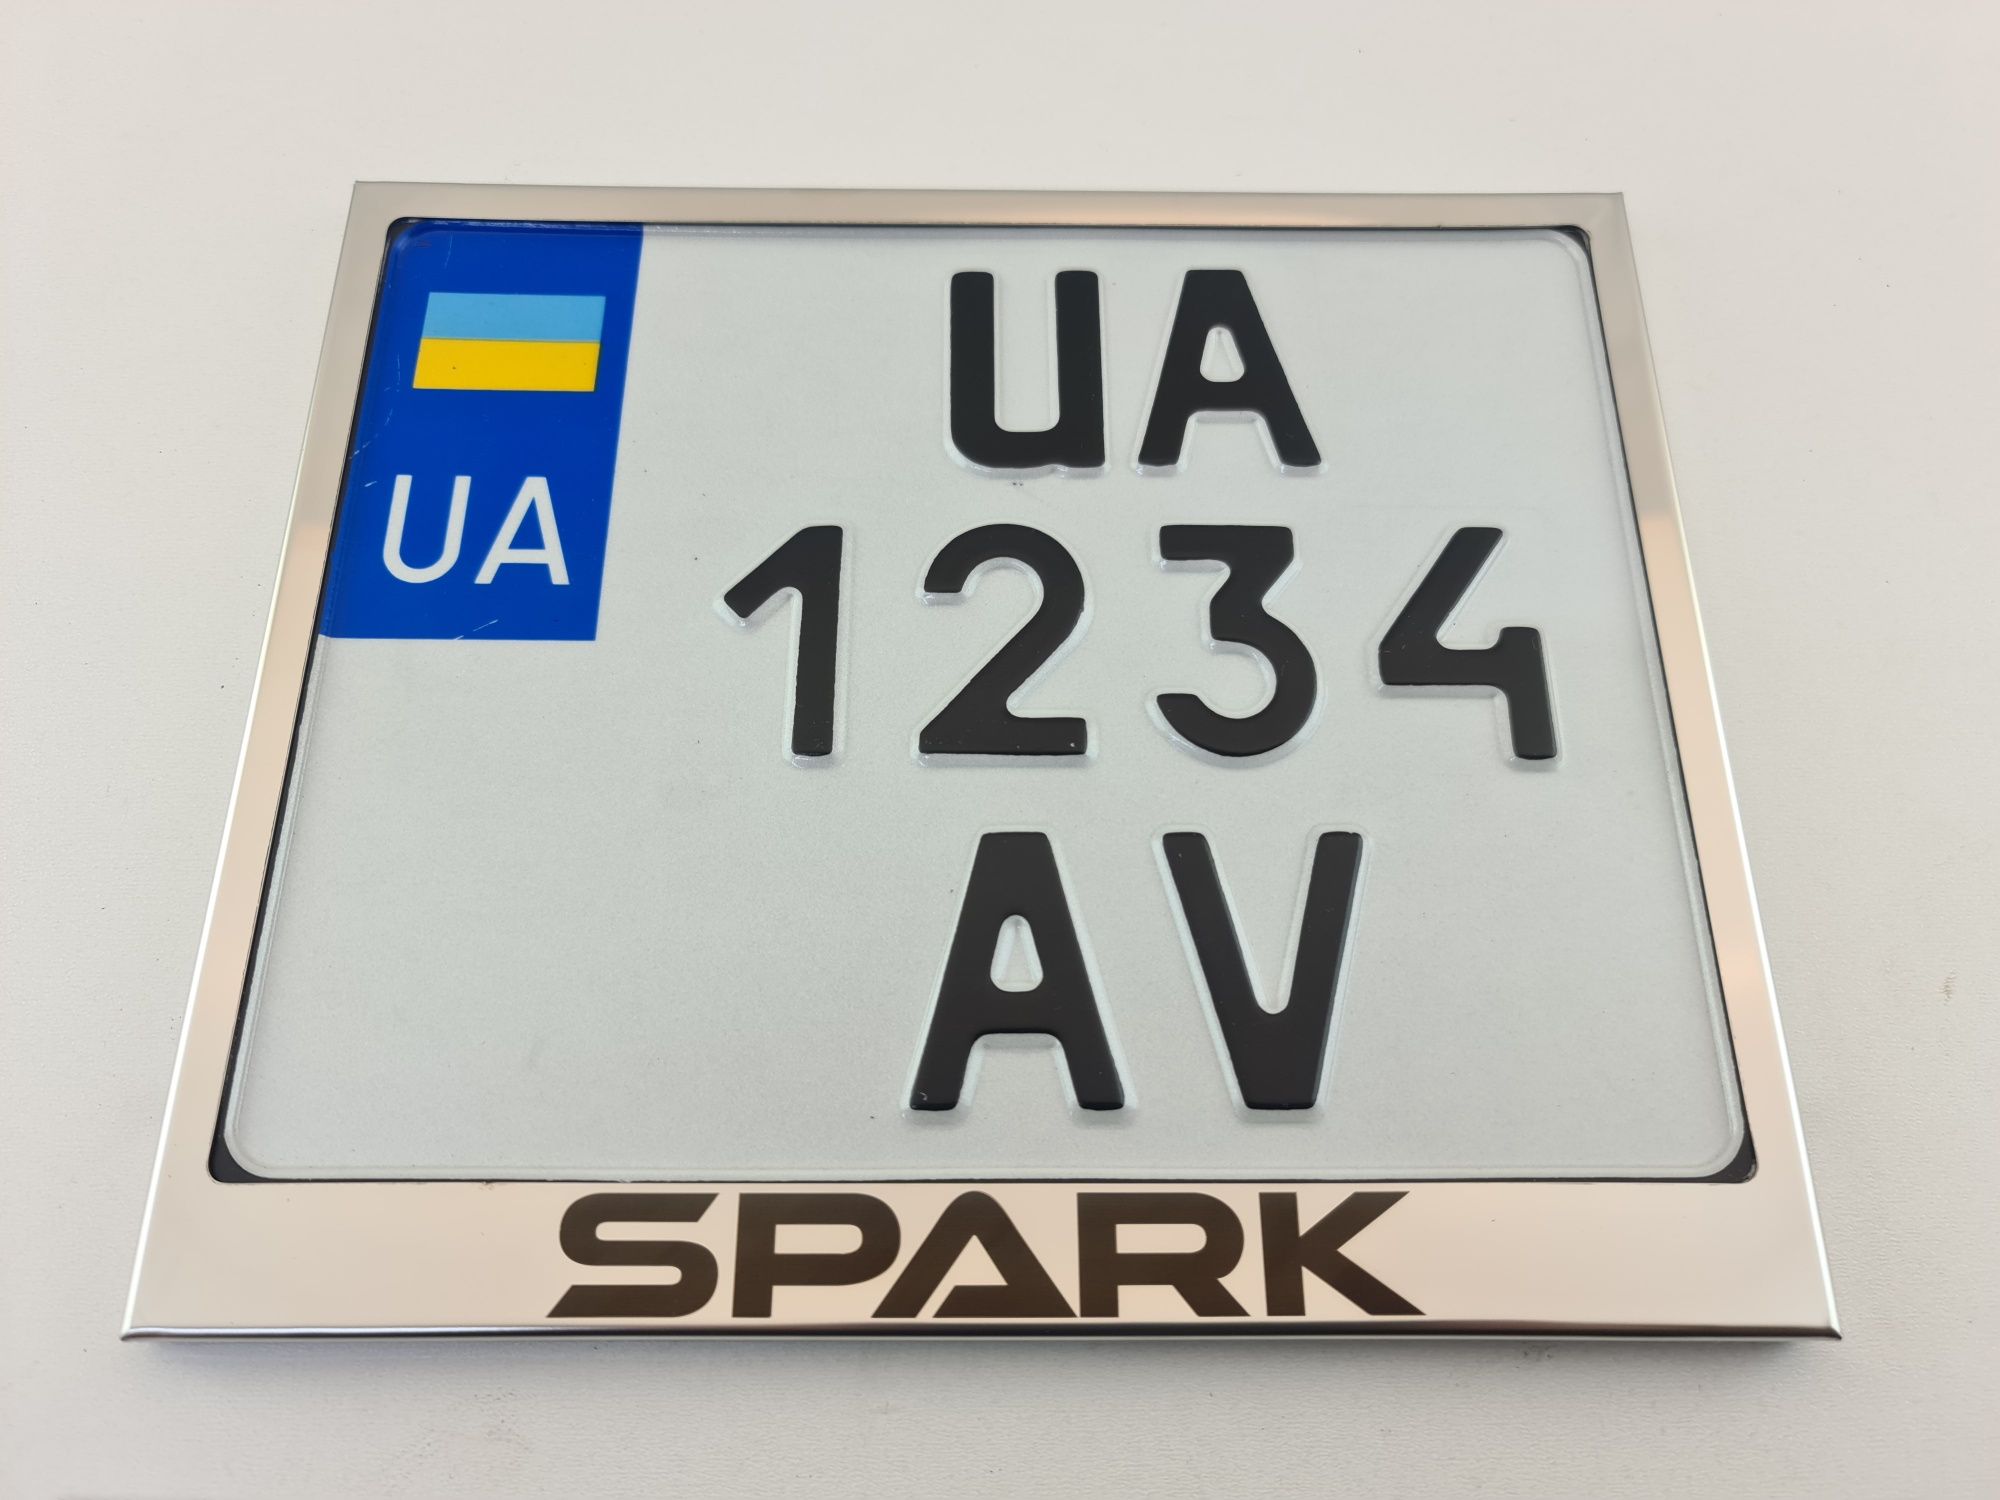 Рамка для мото номера Украины с надписью SPARK зеркальная нержавейка